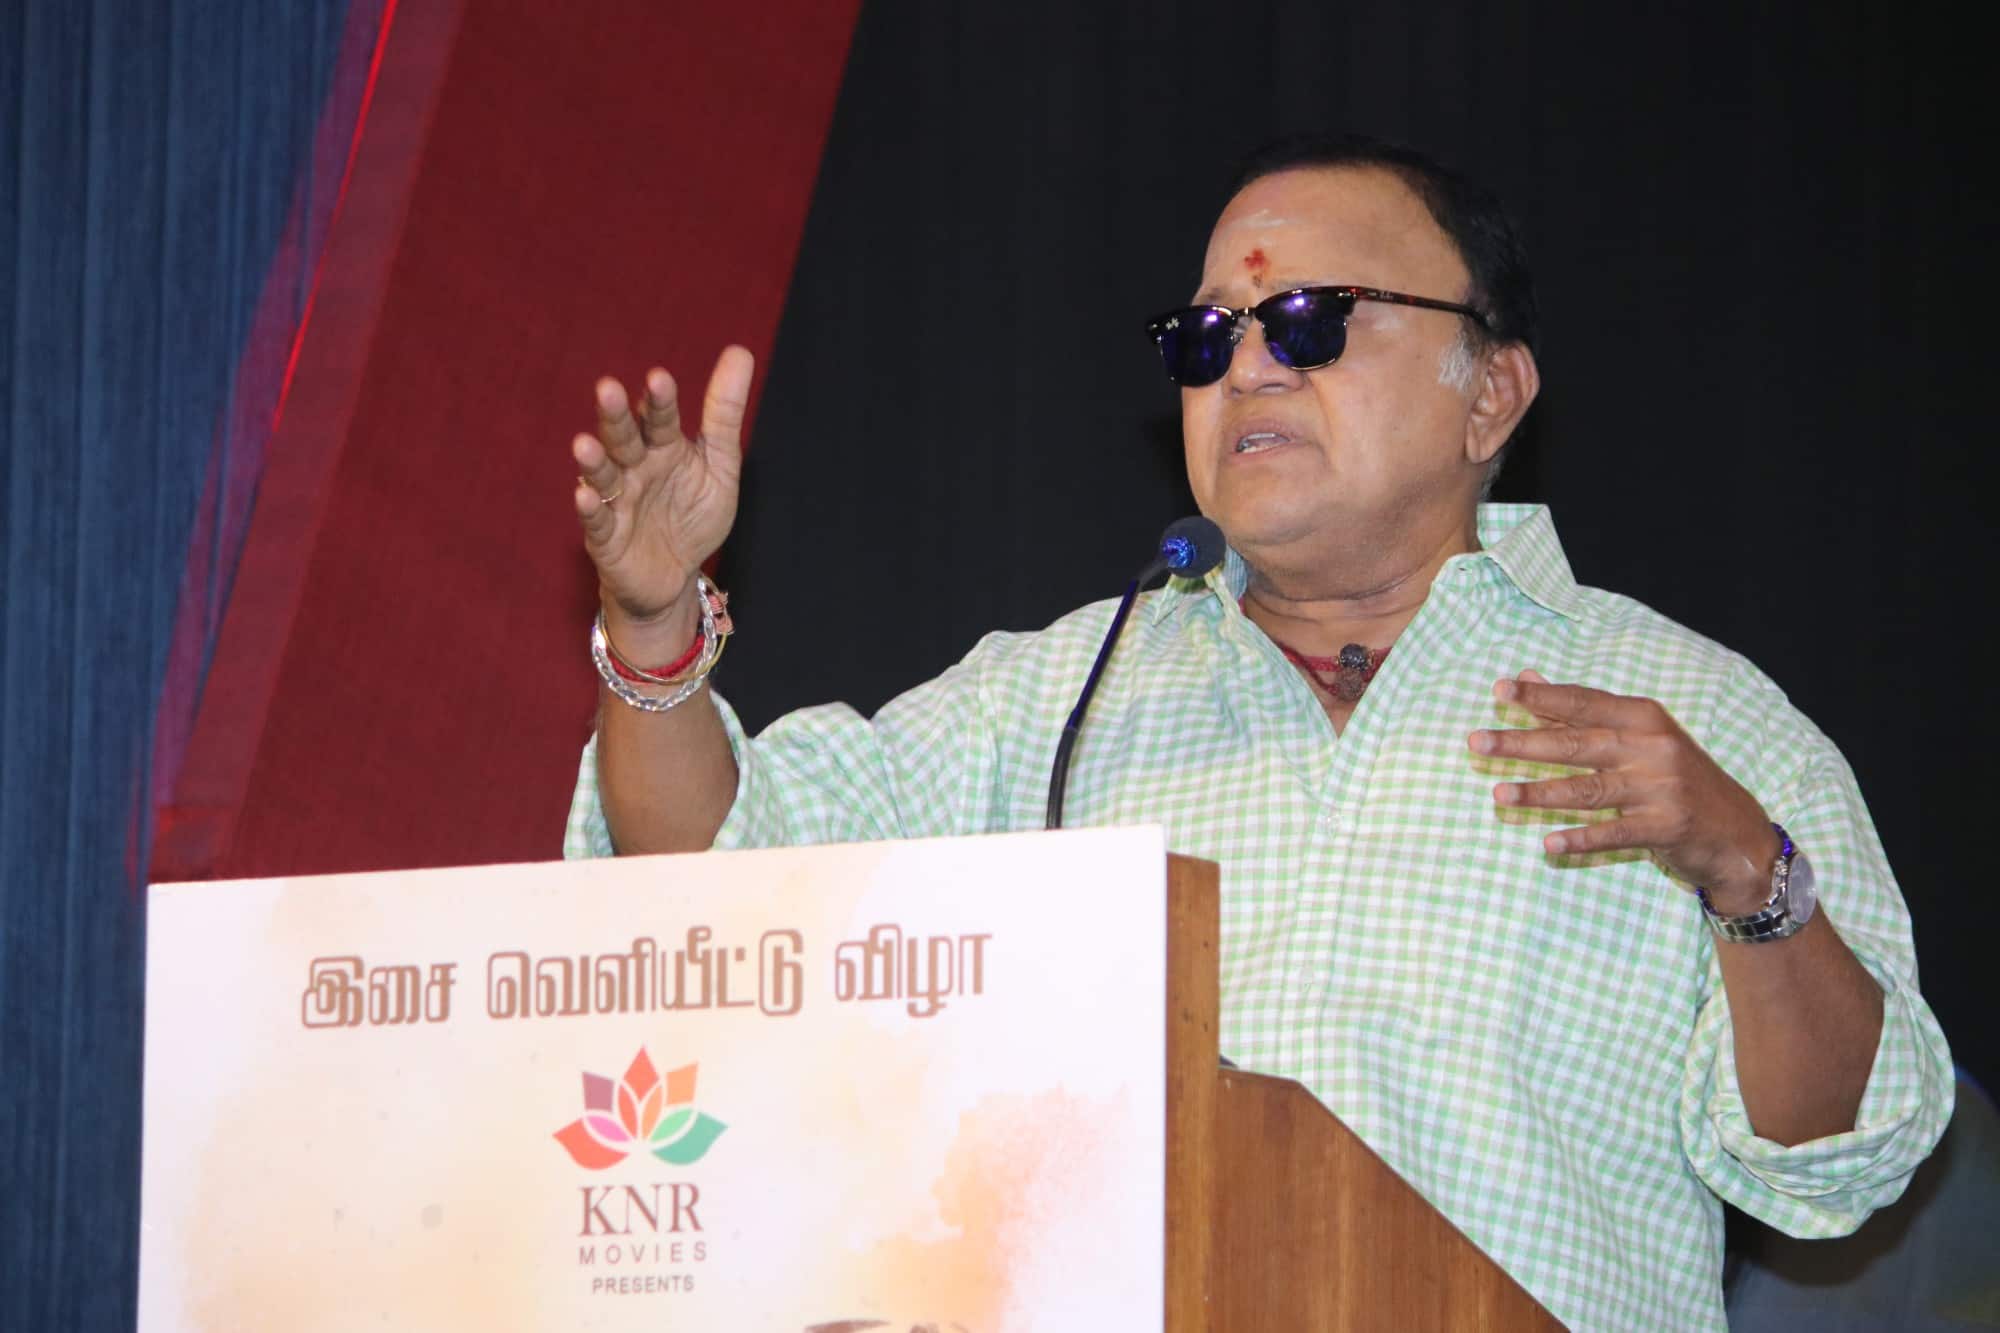 ajith help 5000 blind people actor radharavi reveal